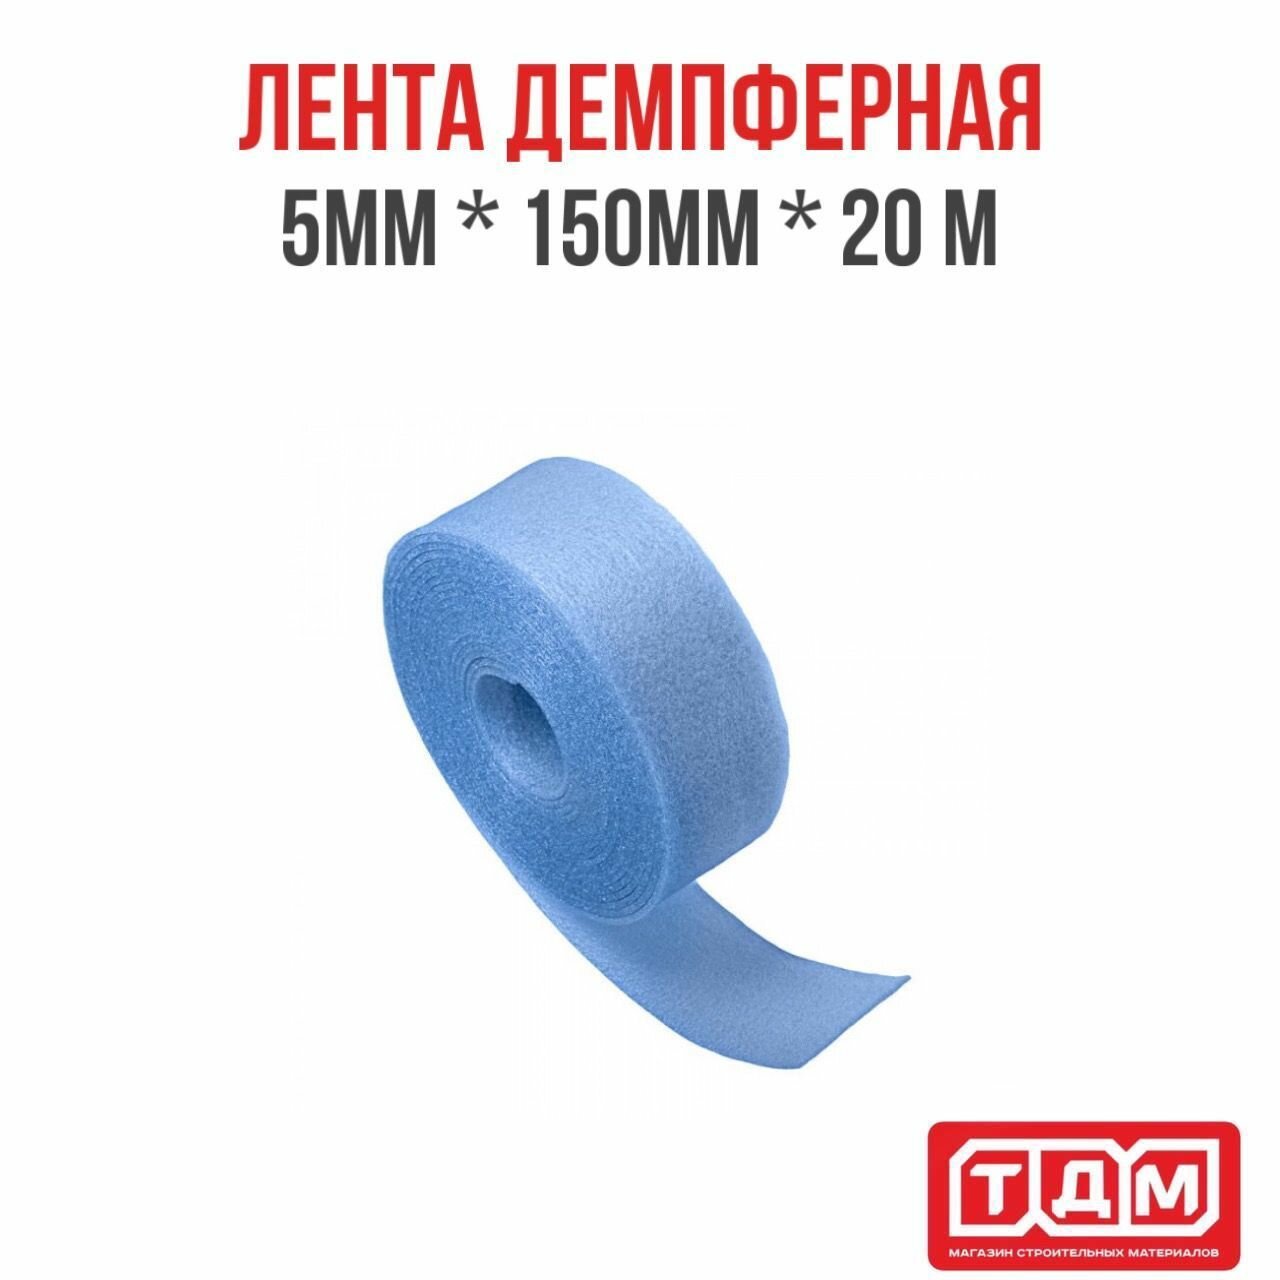 Лента демпферная 5мм (толщина) х 150мм (ширина) х 20м (длина) голубая / кромочная лента для стяжки пола